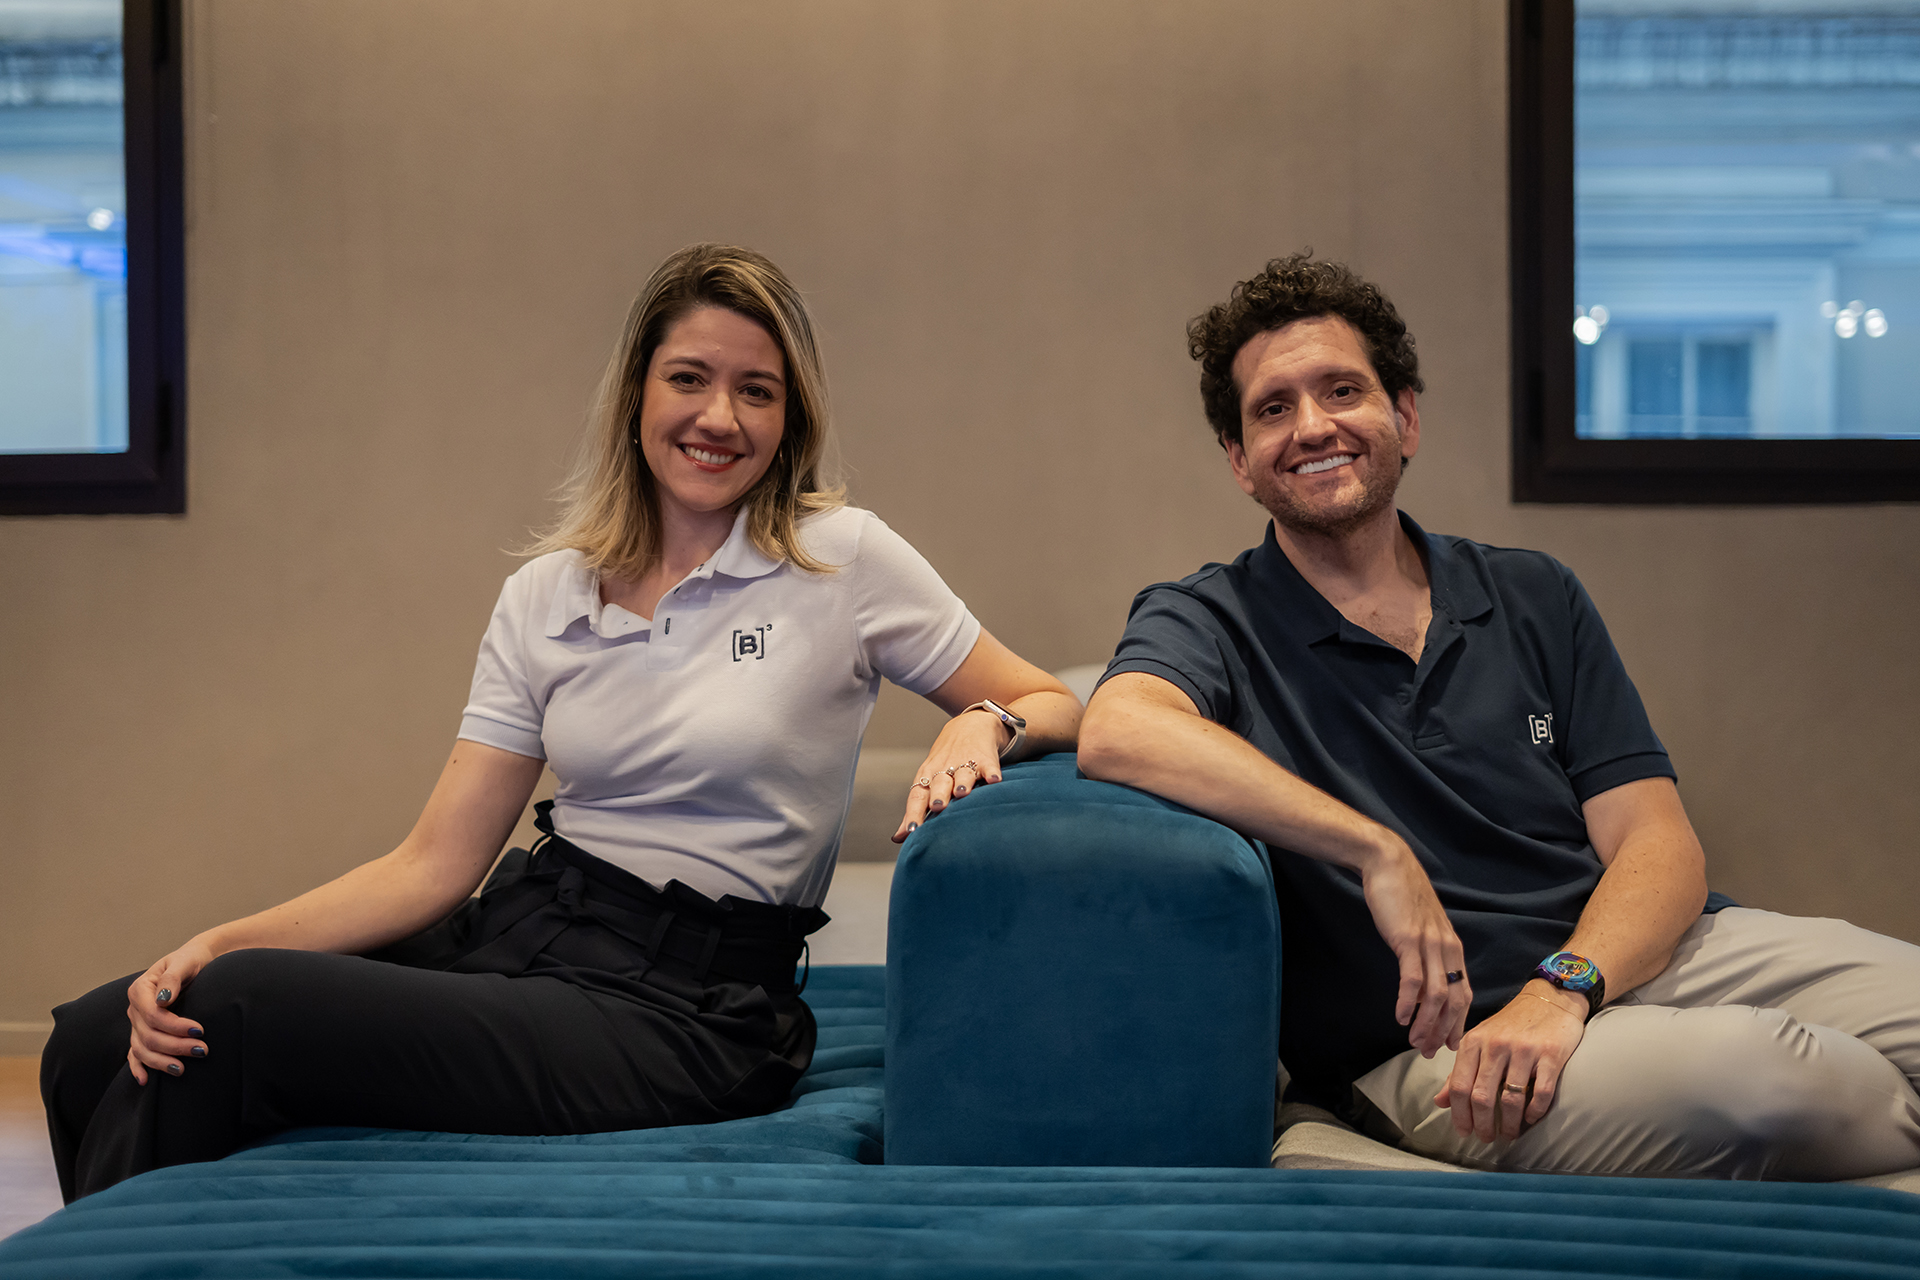 Christianne Bariquelli e Marcos Albino Rodrigues sentados em um sofá, de frente para a câmera. Ambos estão sorrindo e vestindo camisas polo com o logotipo da B3.